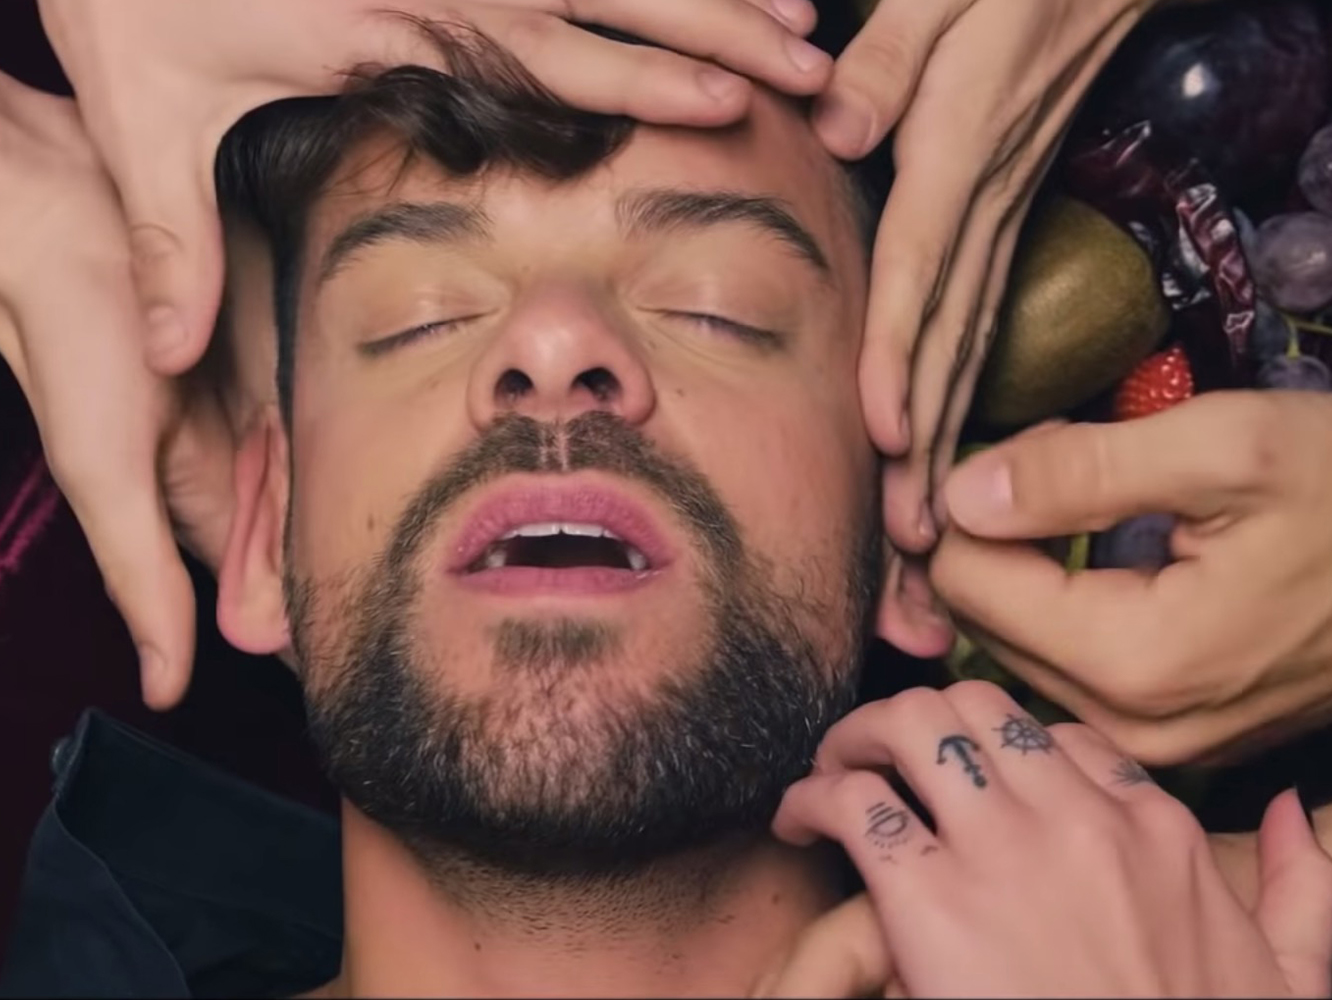  La revolución sexual: Ricky Merino, el Paco Porras de las orgías en el vídeo de ‘Miénteme’